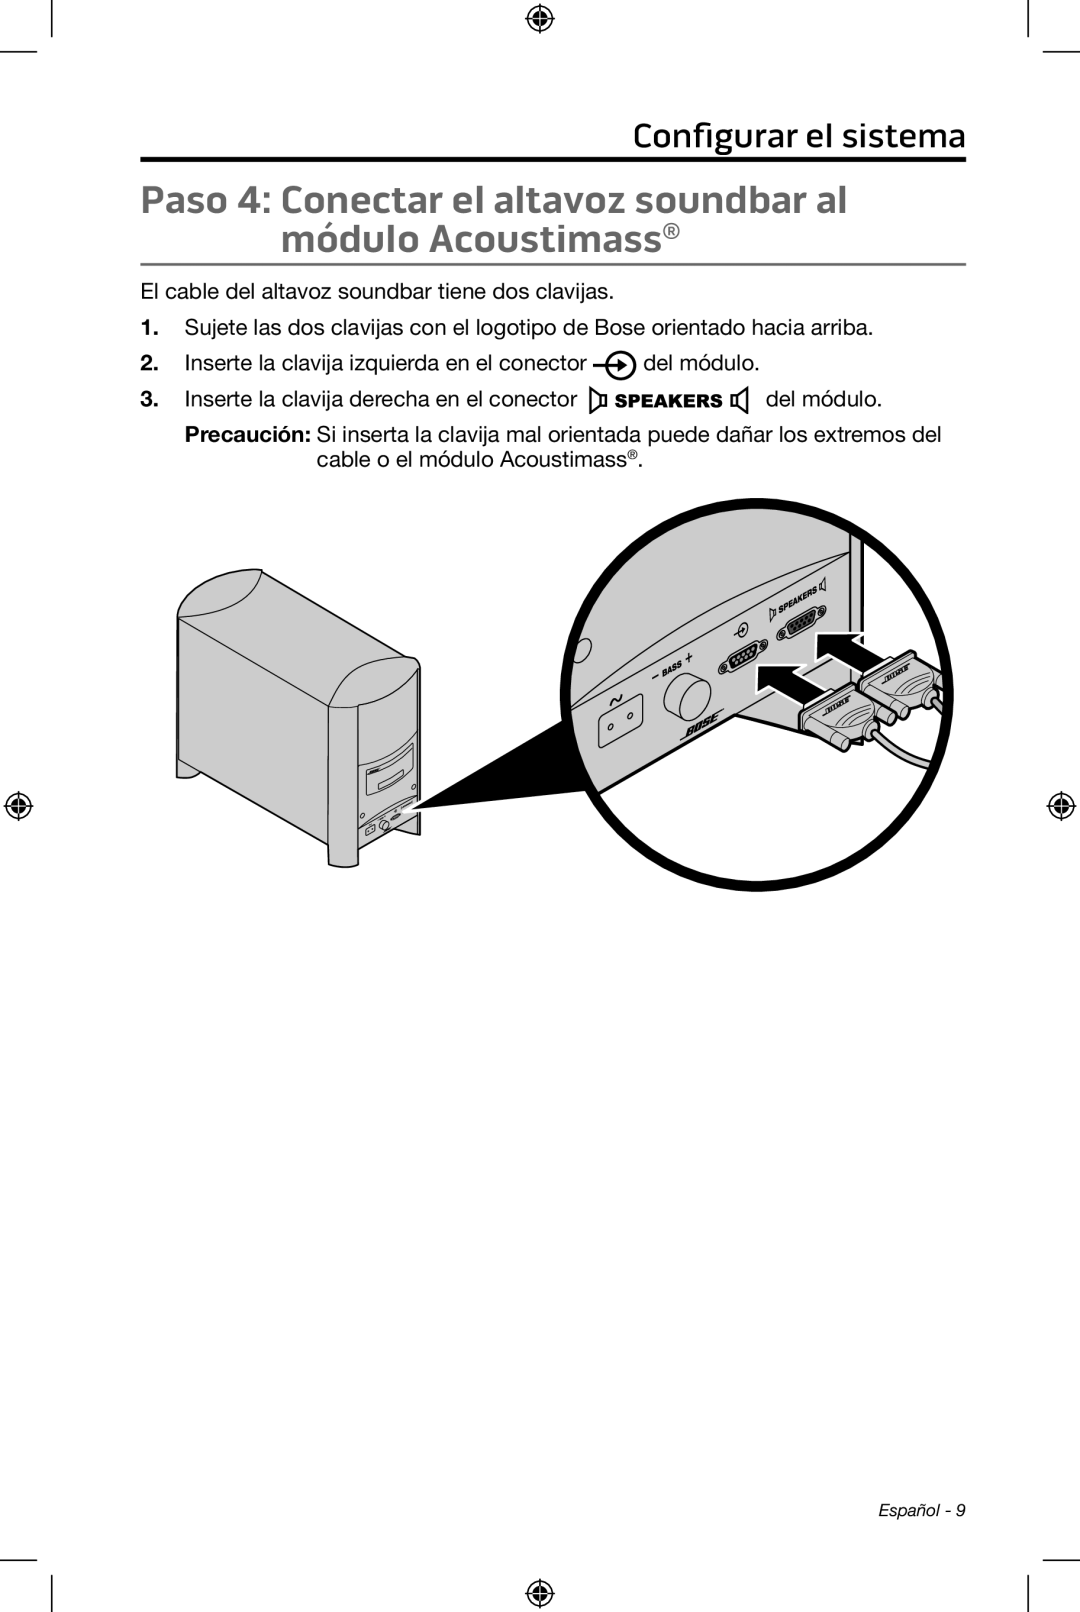 Bose CineMate 15/10 manual Configurar el sistema, El cable del altavoz soundbar tiene dos clavijas 